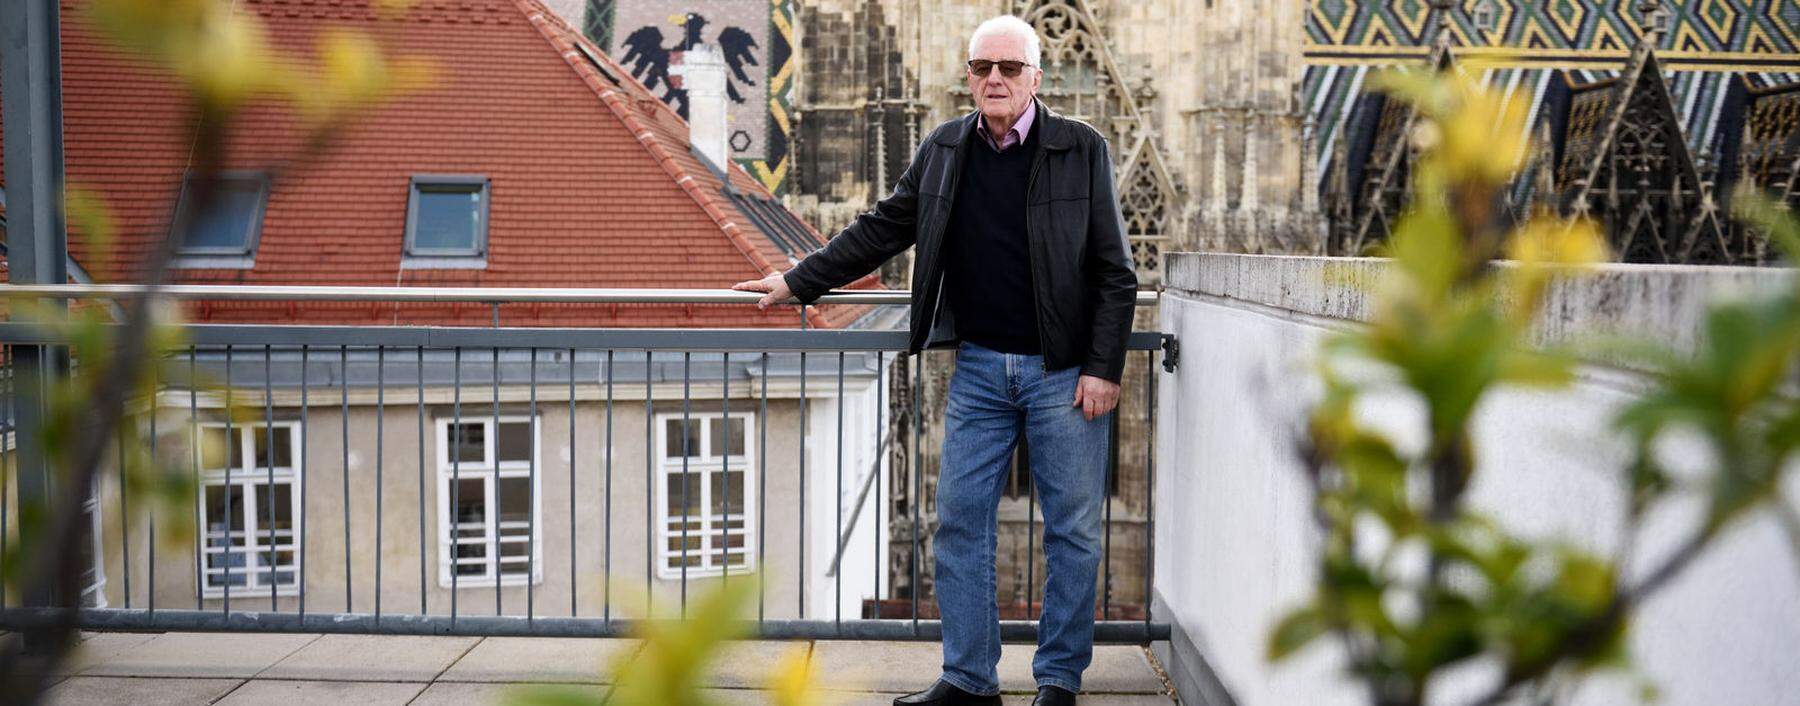 Erich Pencik besucht seit dem Tod seiner Frau im Februar 2018 eine Trauergruppe bei der Caritas Wien. Der 76-Jährige ist dort der einzige Mann.            